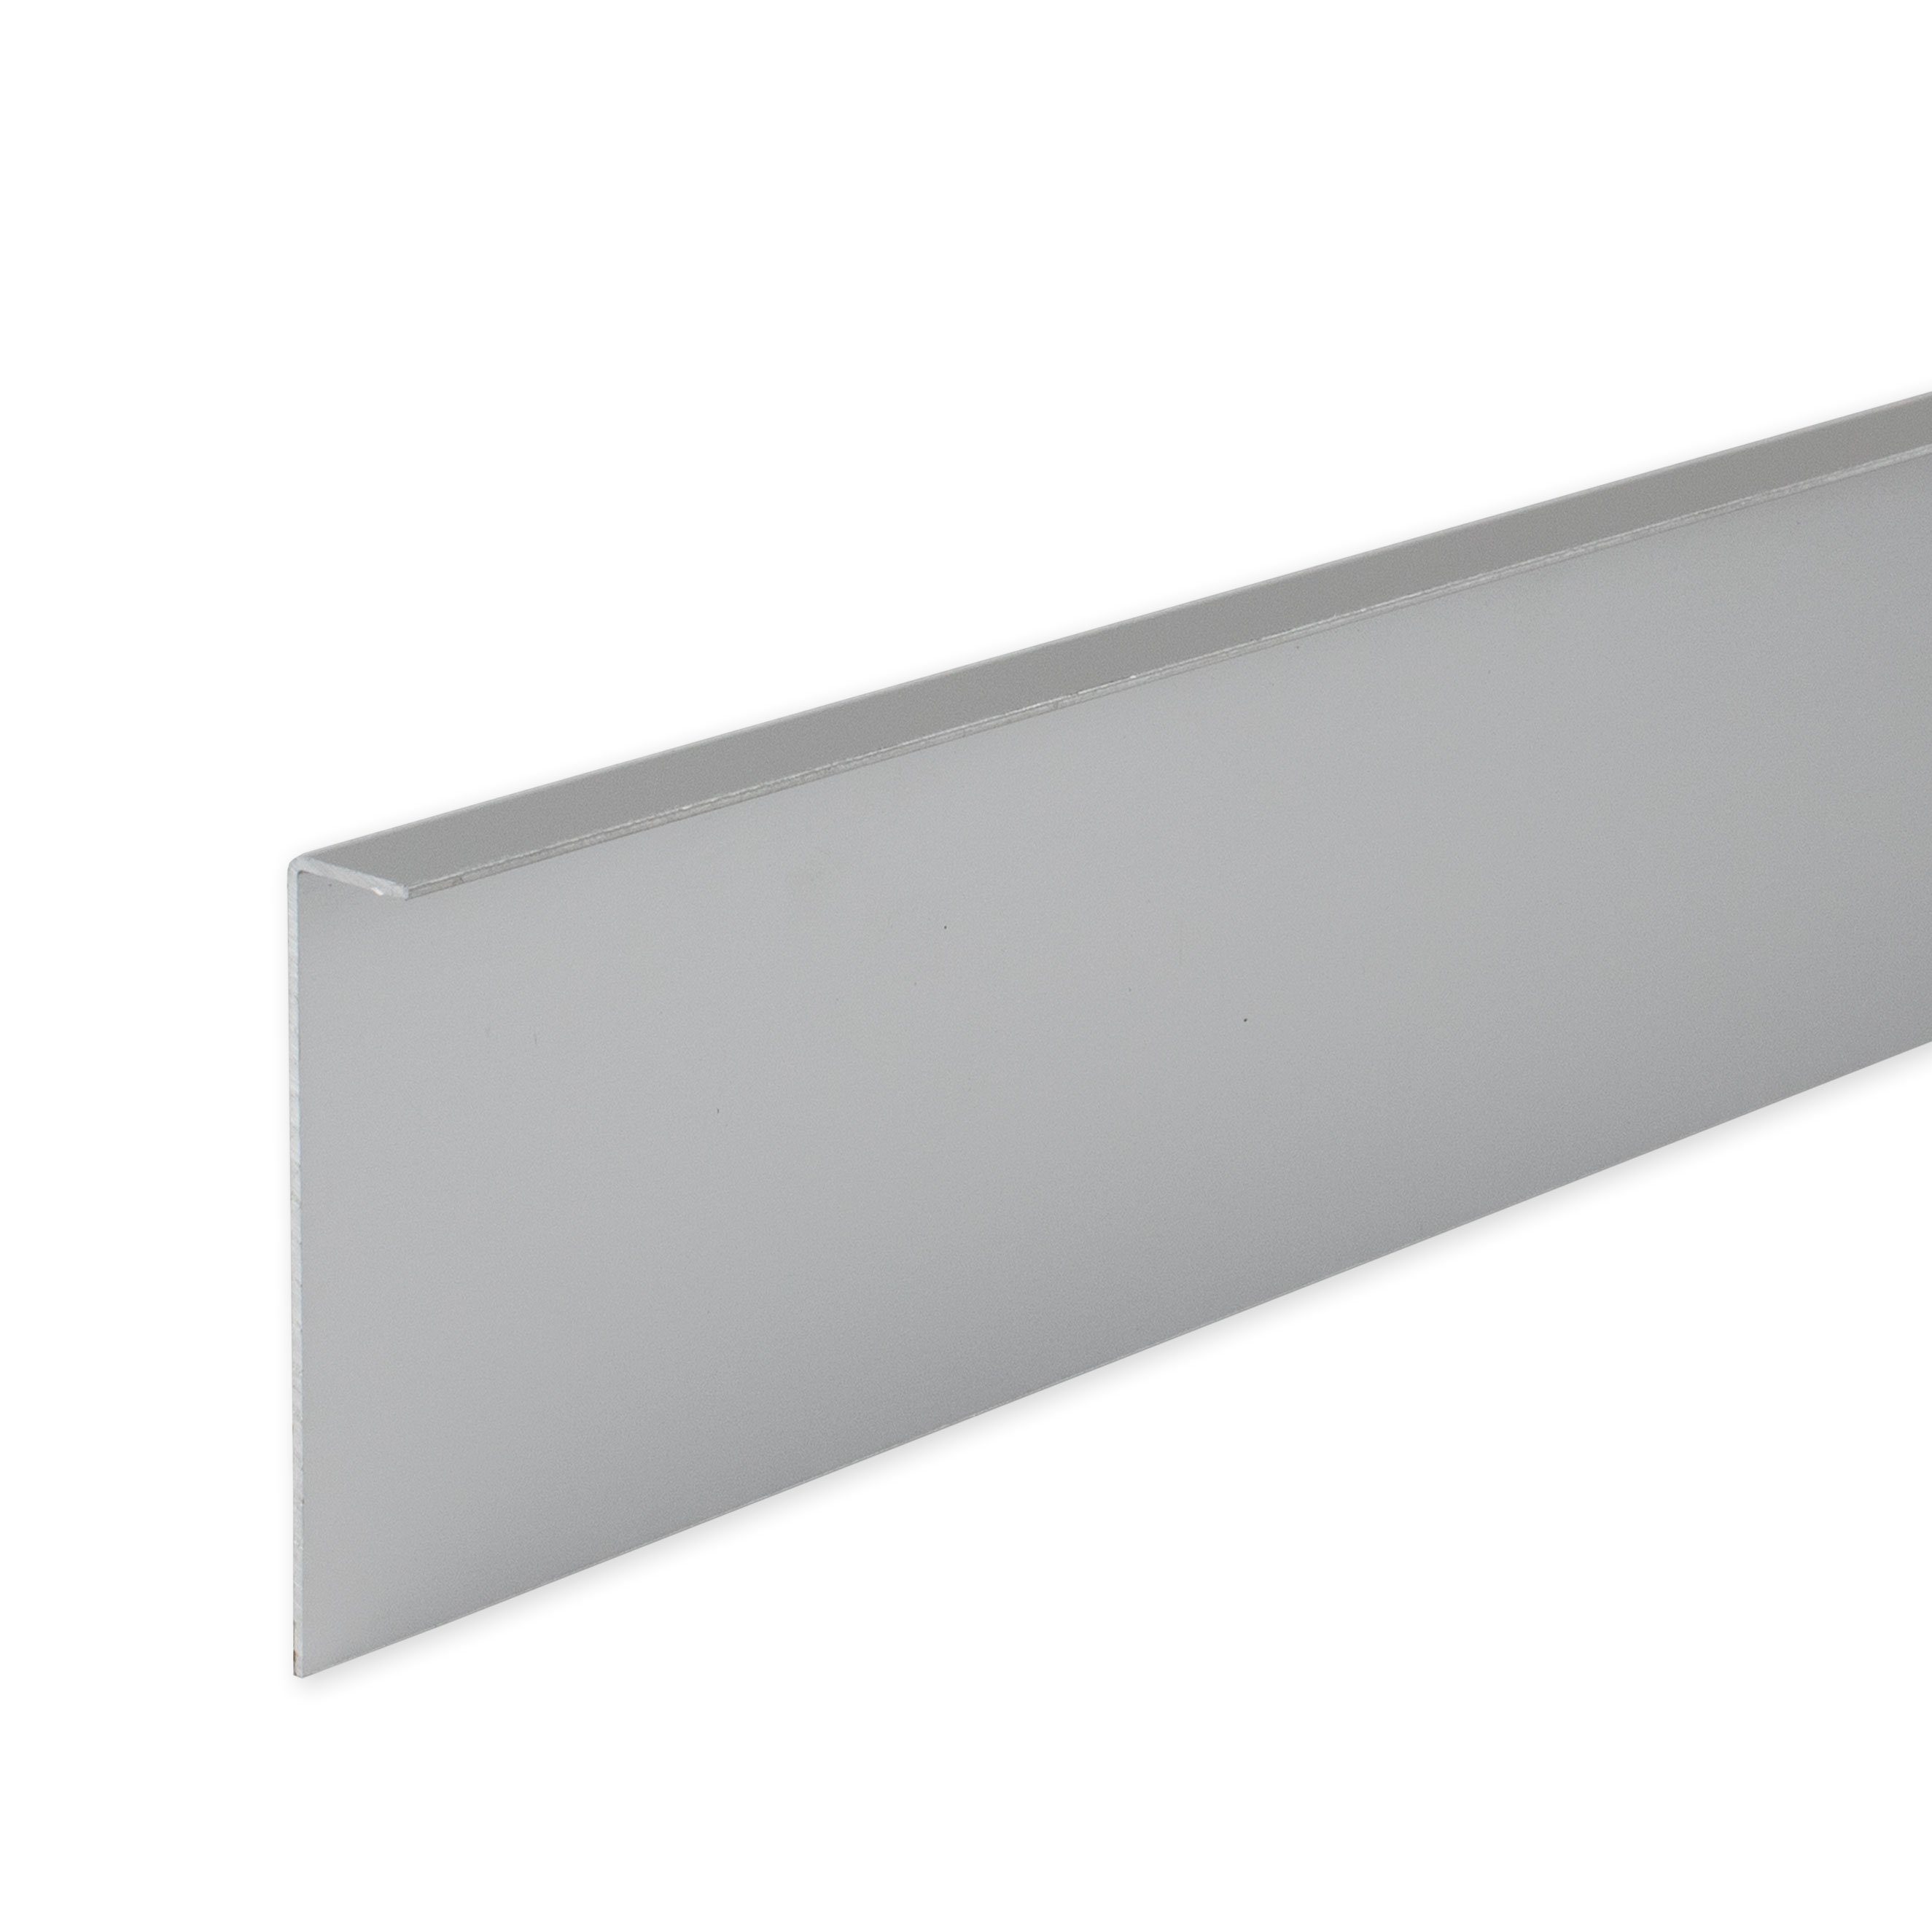 PROVISTON Sockelleiste Aluminium, 60 x 11 x 2500 mm, Silber, Metall Sockelleiste